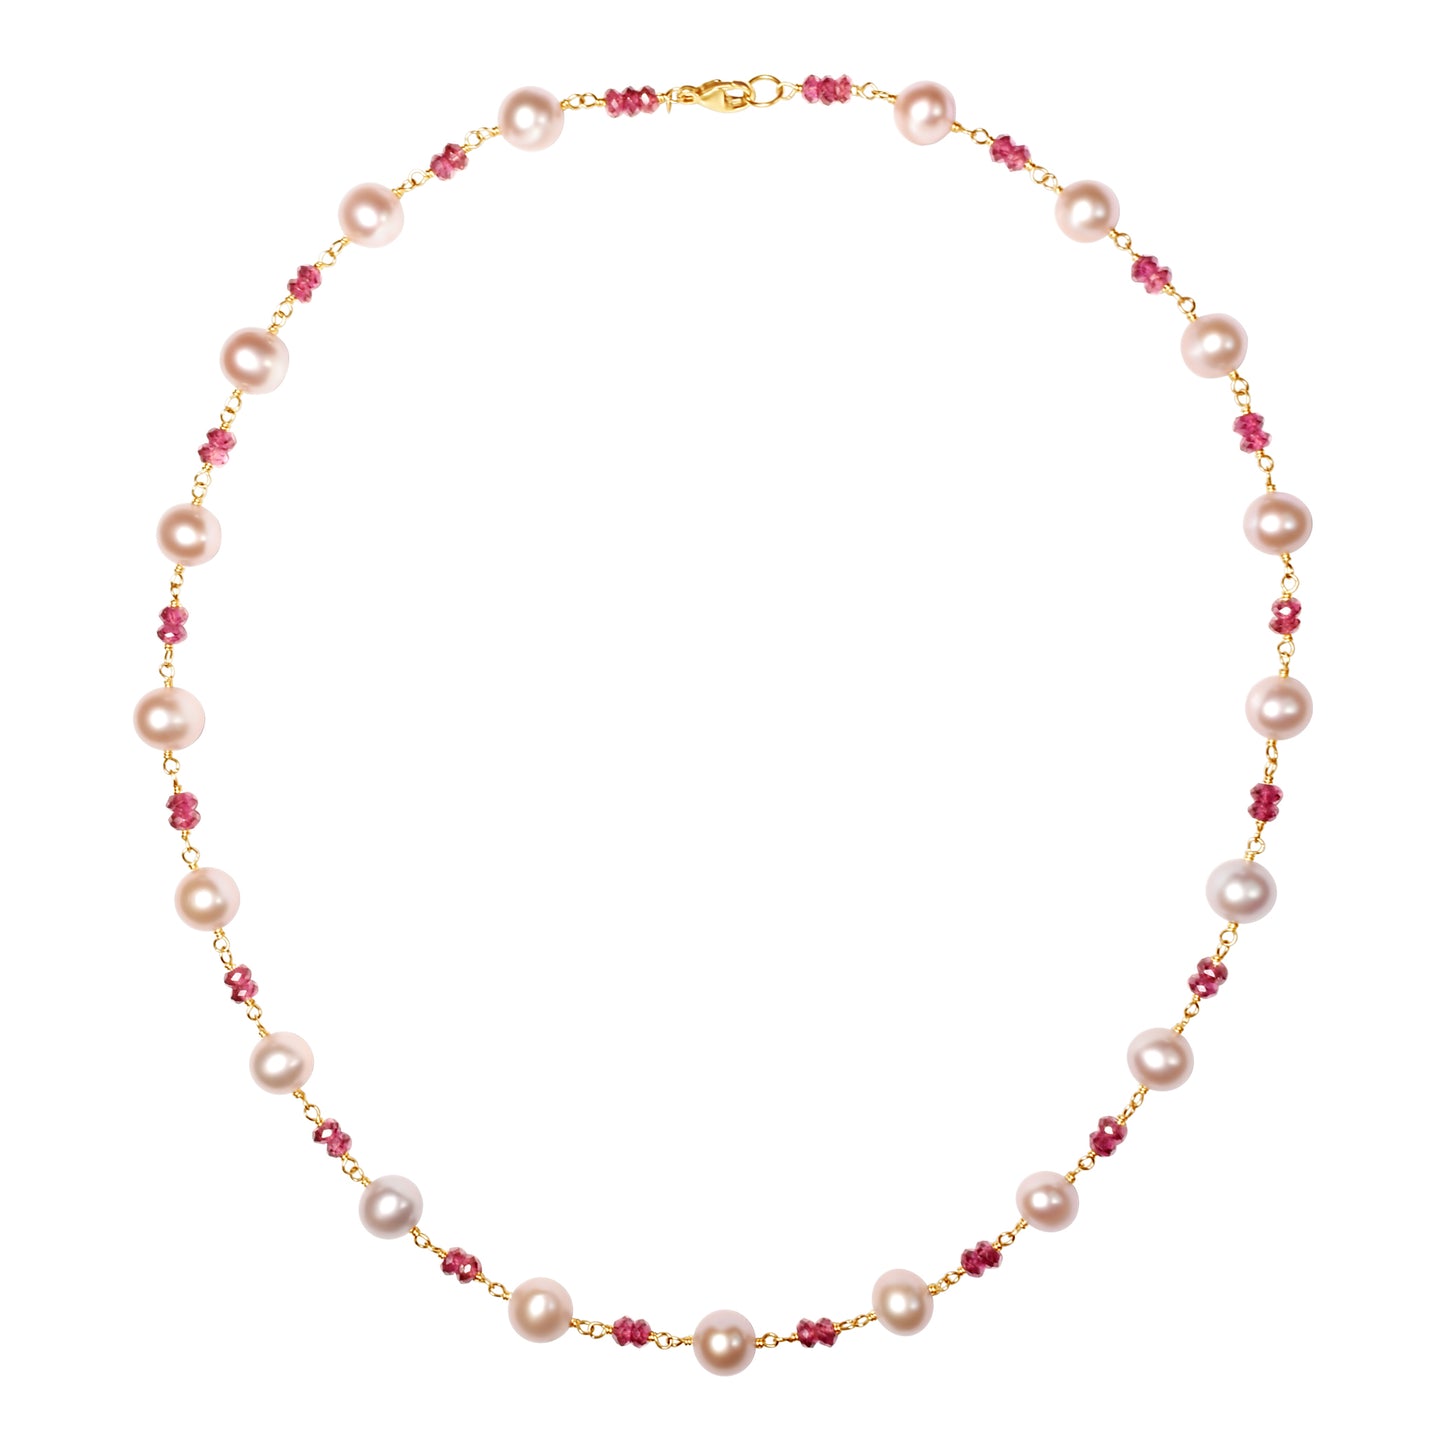 14k Pink Freshwater Pearl Rhodolite Garnet Link Necklace 18"